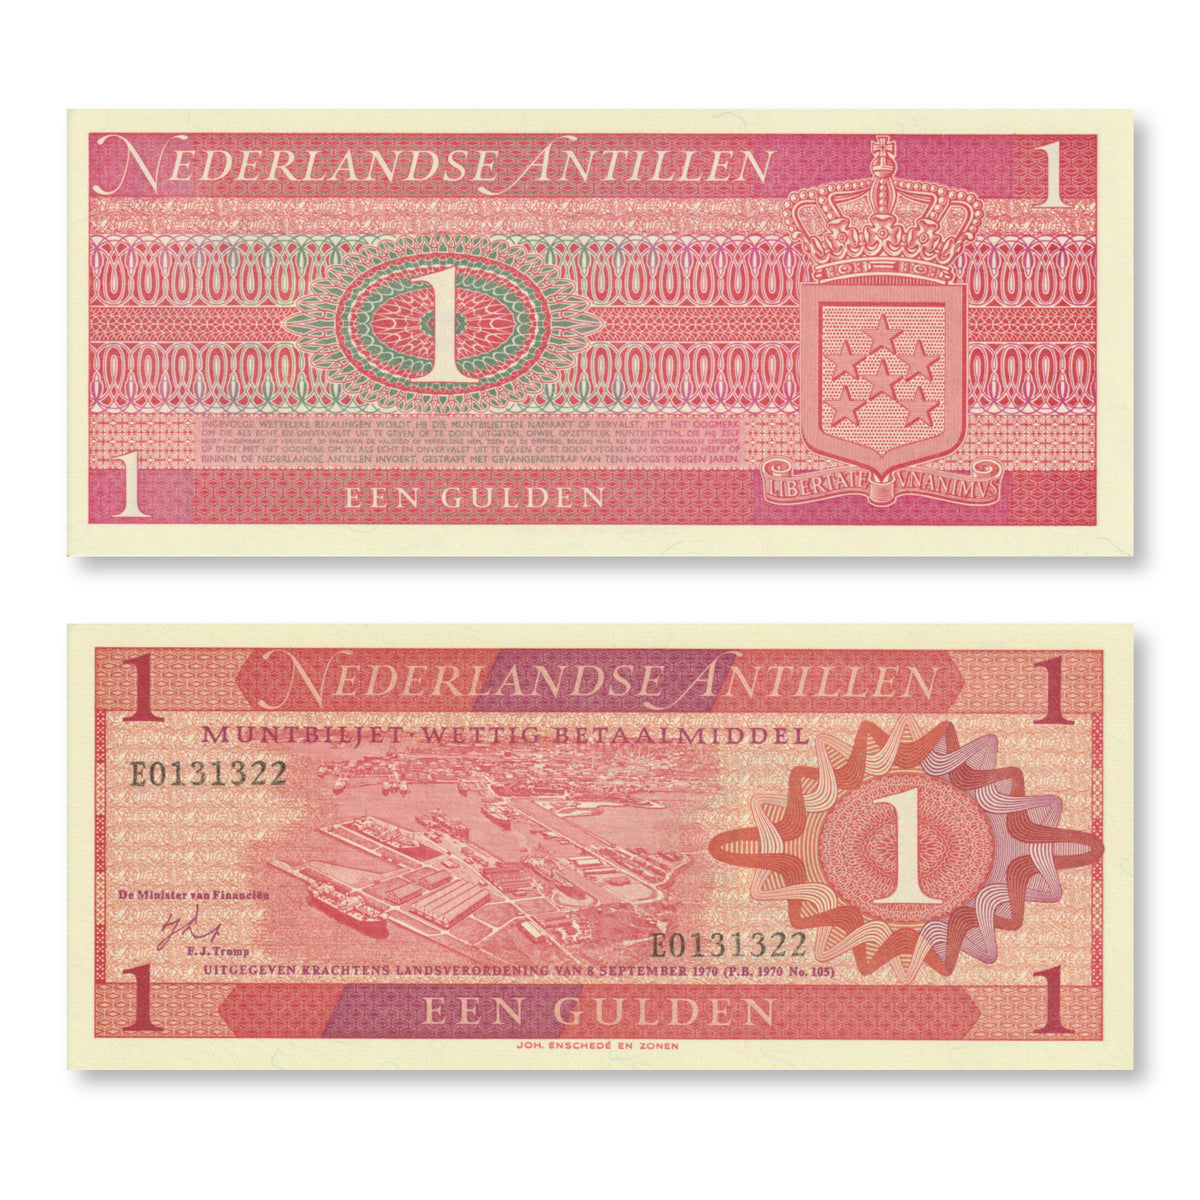 Netherlands Antilles 1 Gulden, 1970, B102a, P20a, UNC - Robert's World Money - World Banknotes